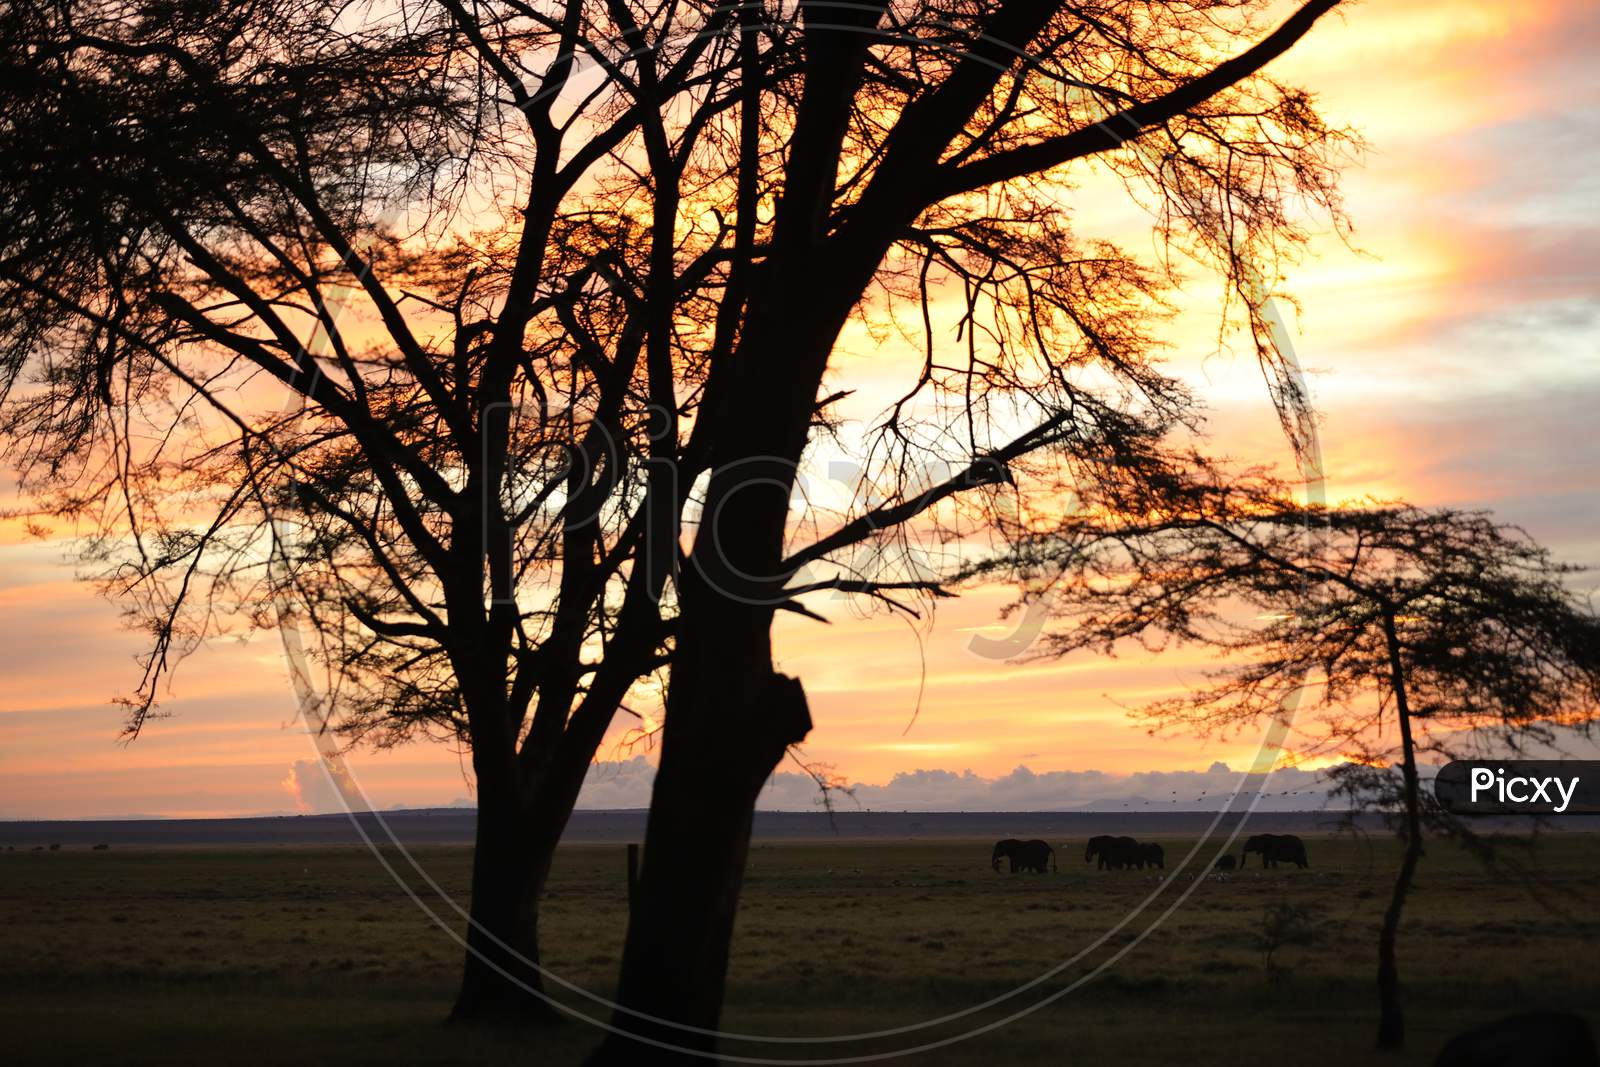 Sunset along the Kenya Natural Reserve Forest